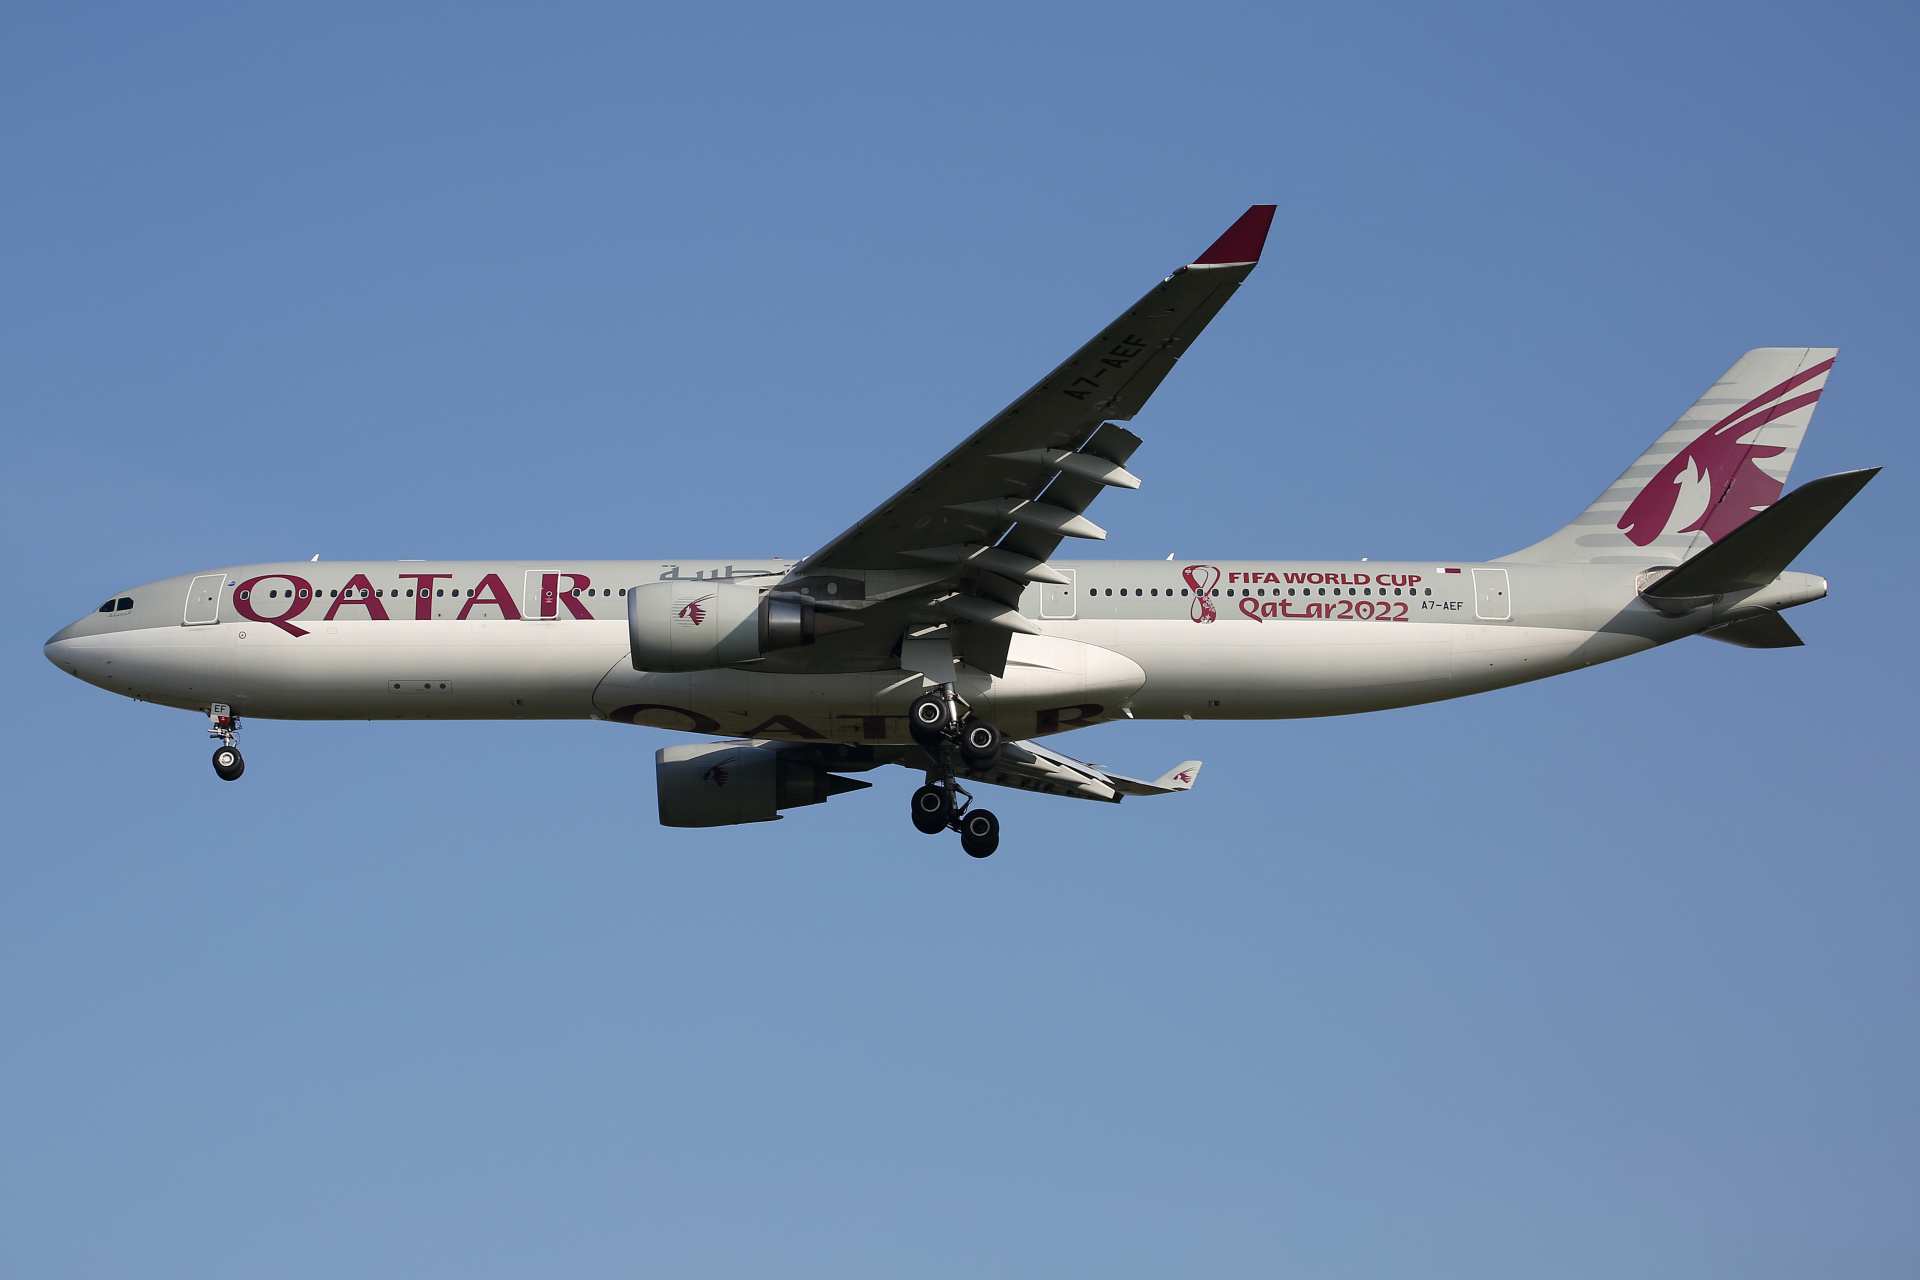 A7-AEF (FIFA World Cup Qatar 2022 livery) (Aircraft » EPWA Spotting » Airbus A330-300 » Qatar Airways)